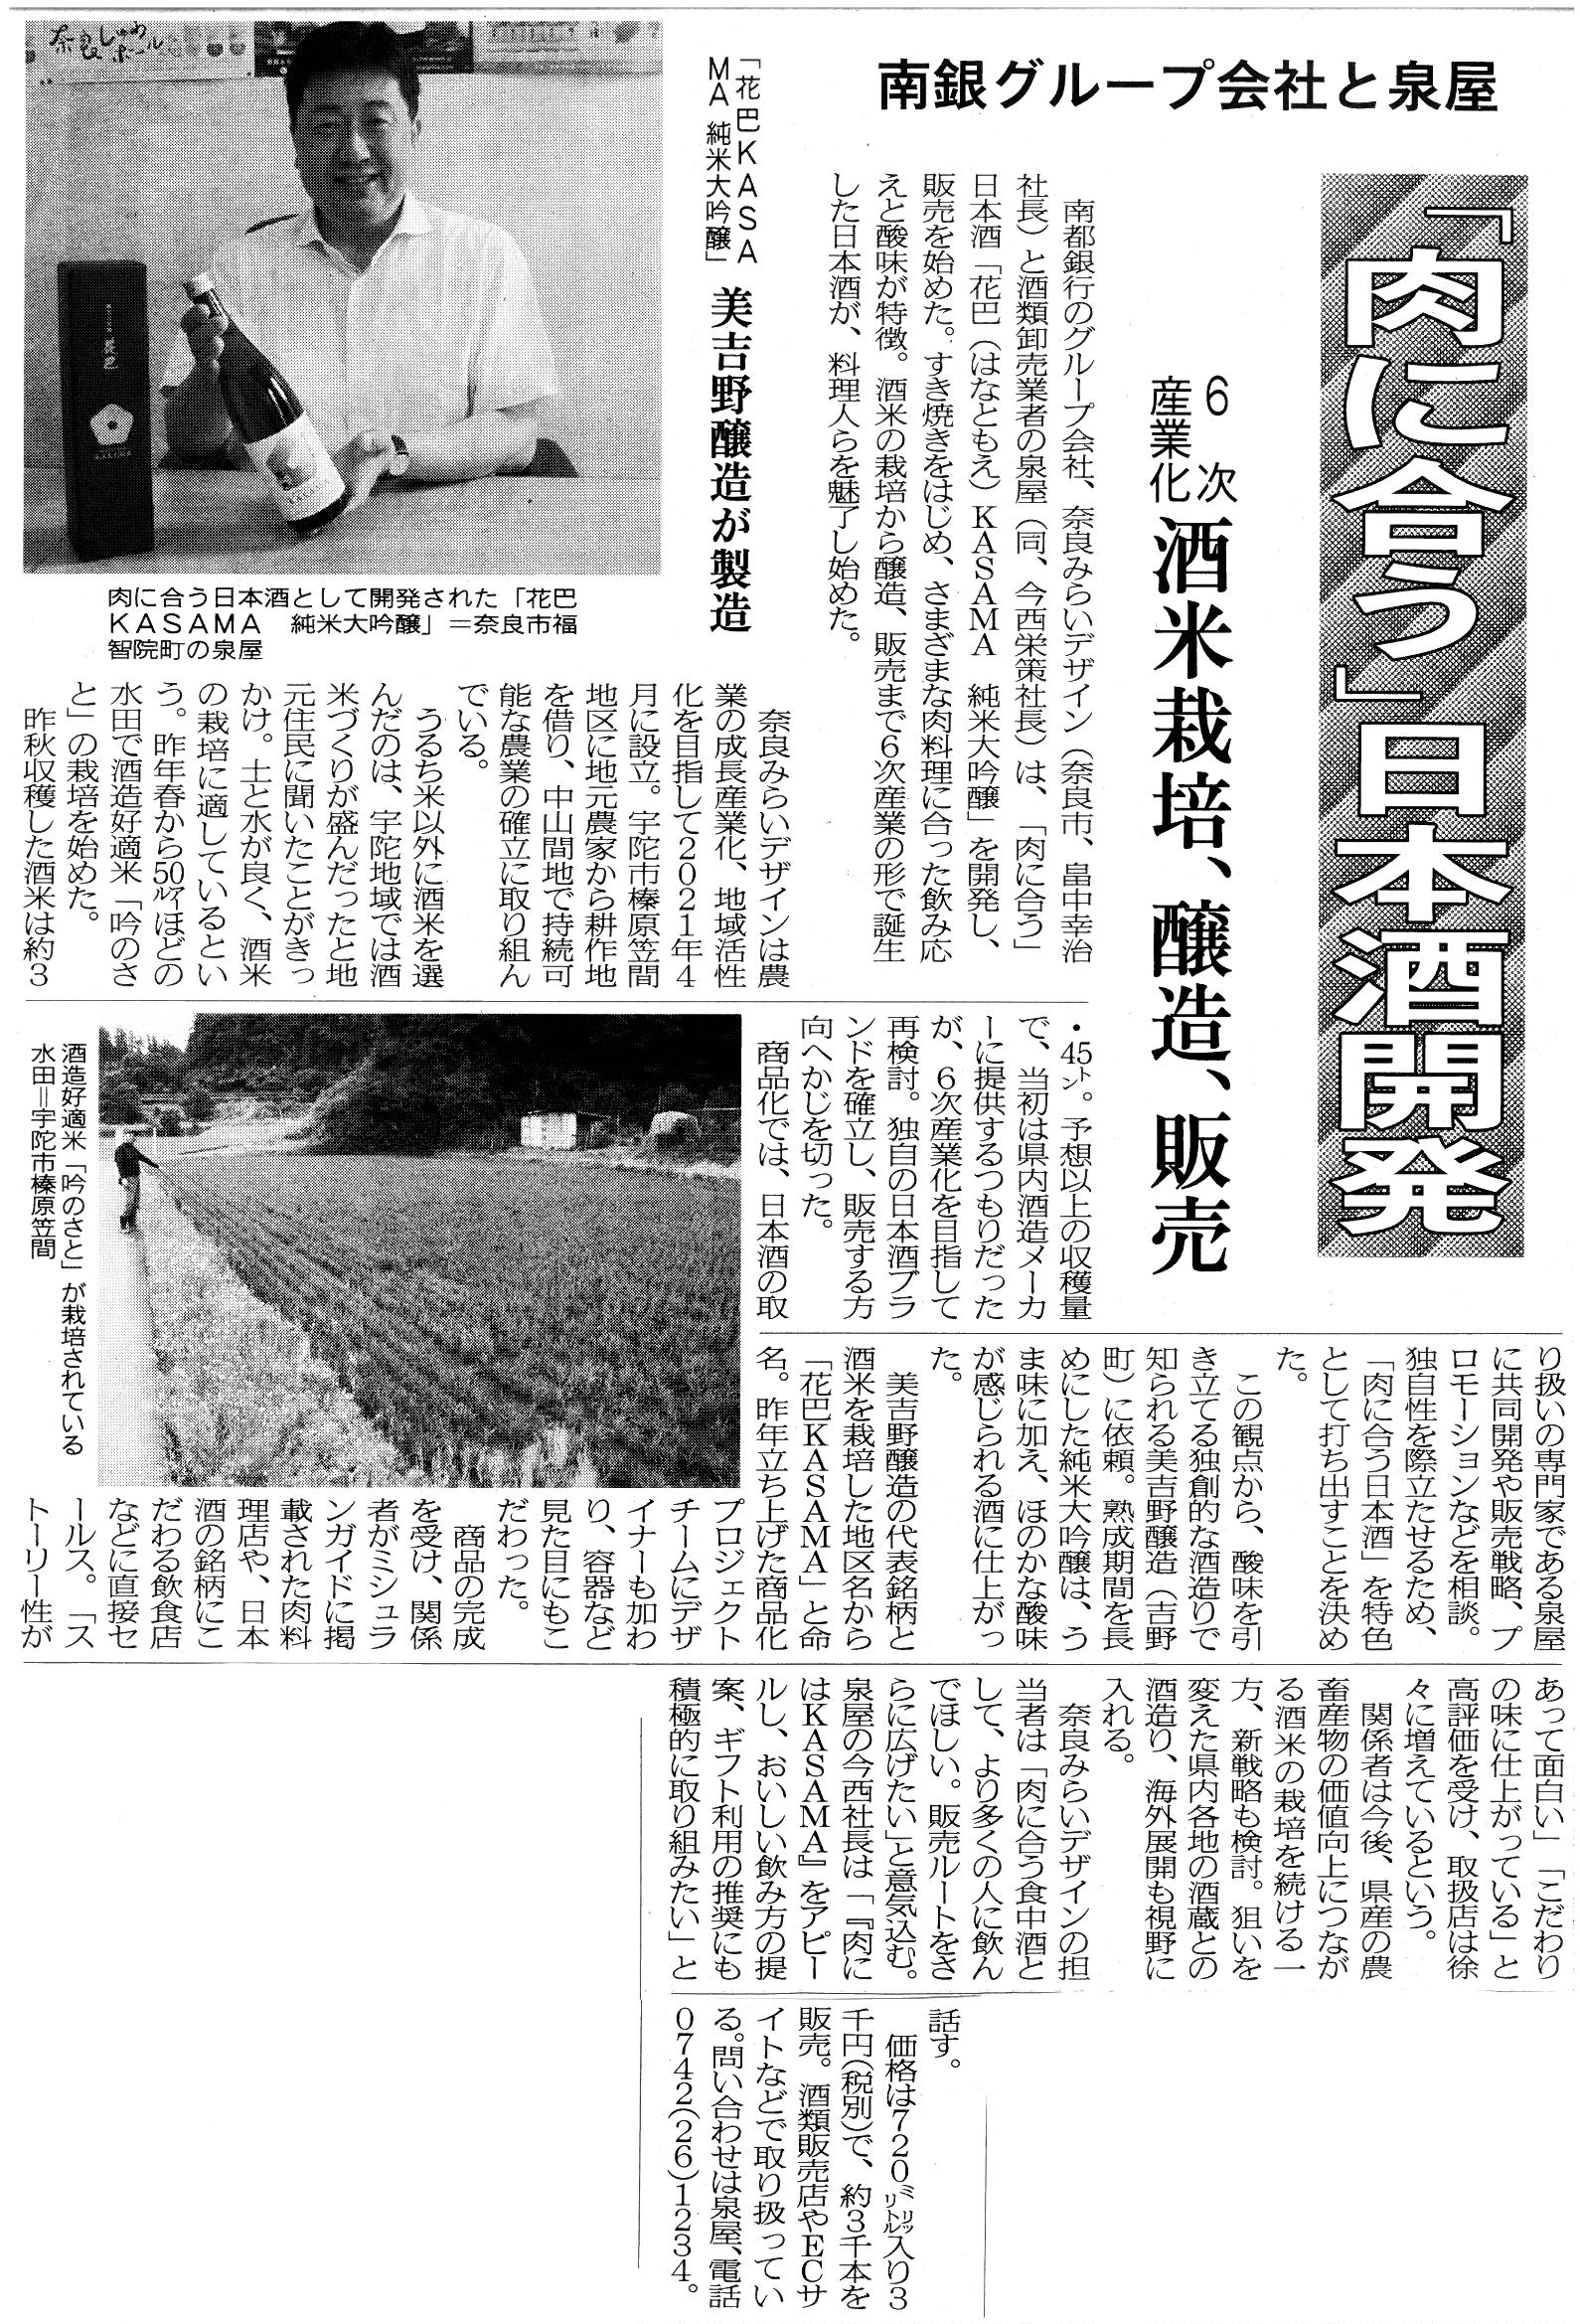 7/20奈良新聞に「花巴 KASAMA」を紹介していただきました！